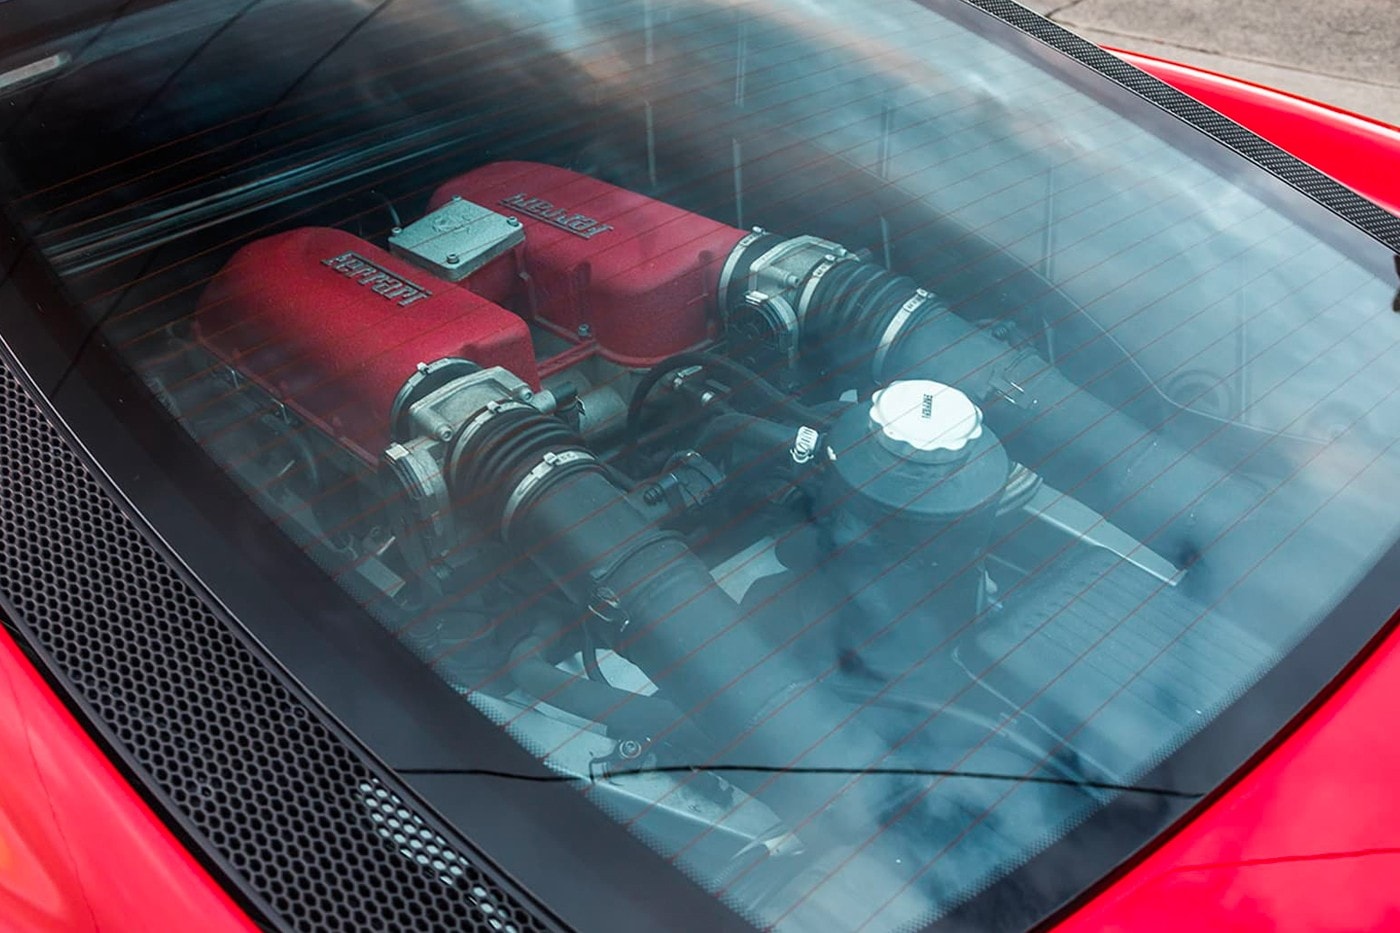 2003 年 Ferrari 360 Modena 加長豪華轎車展開販售